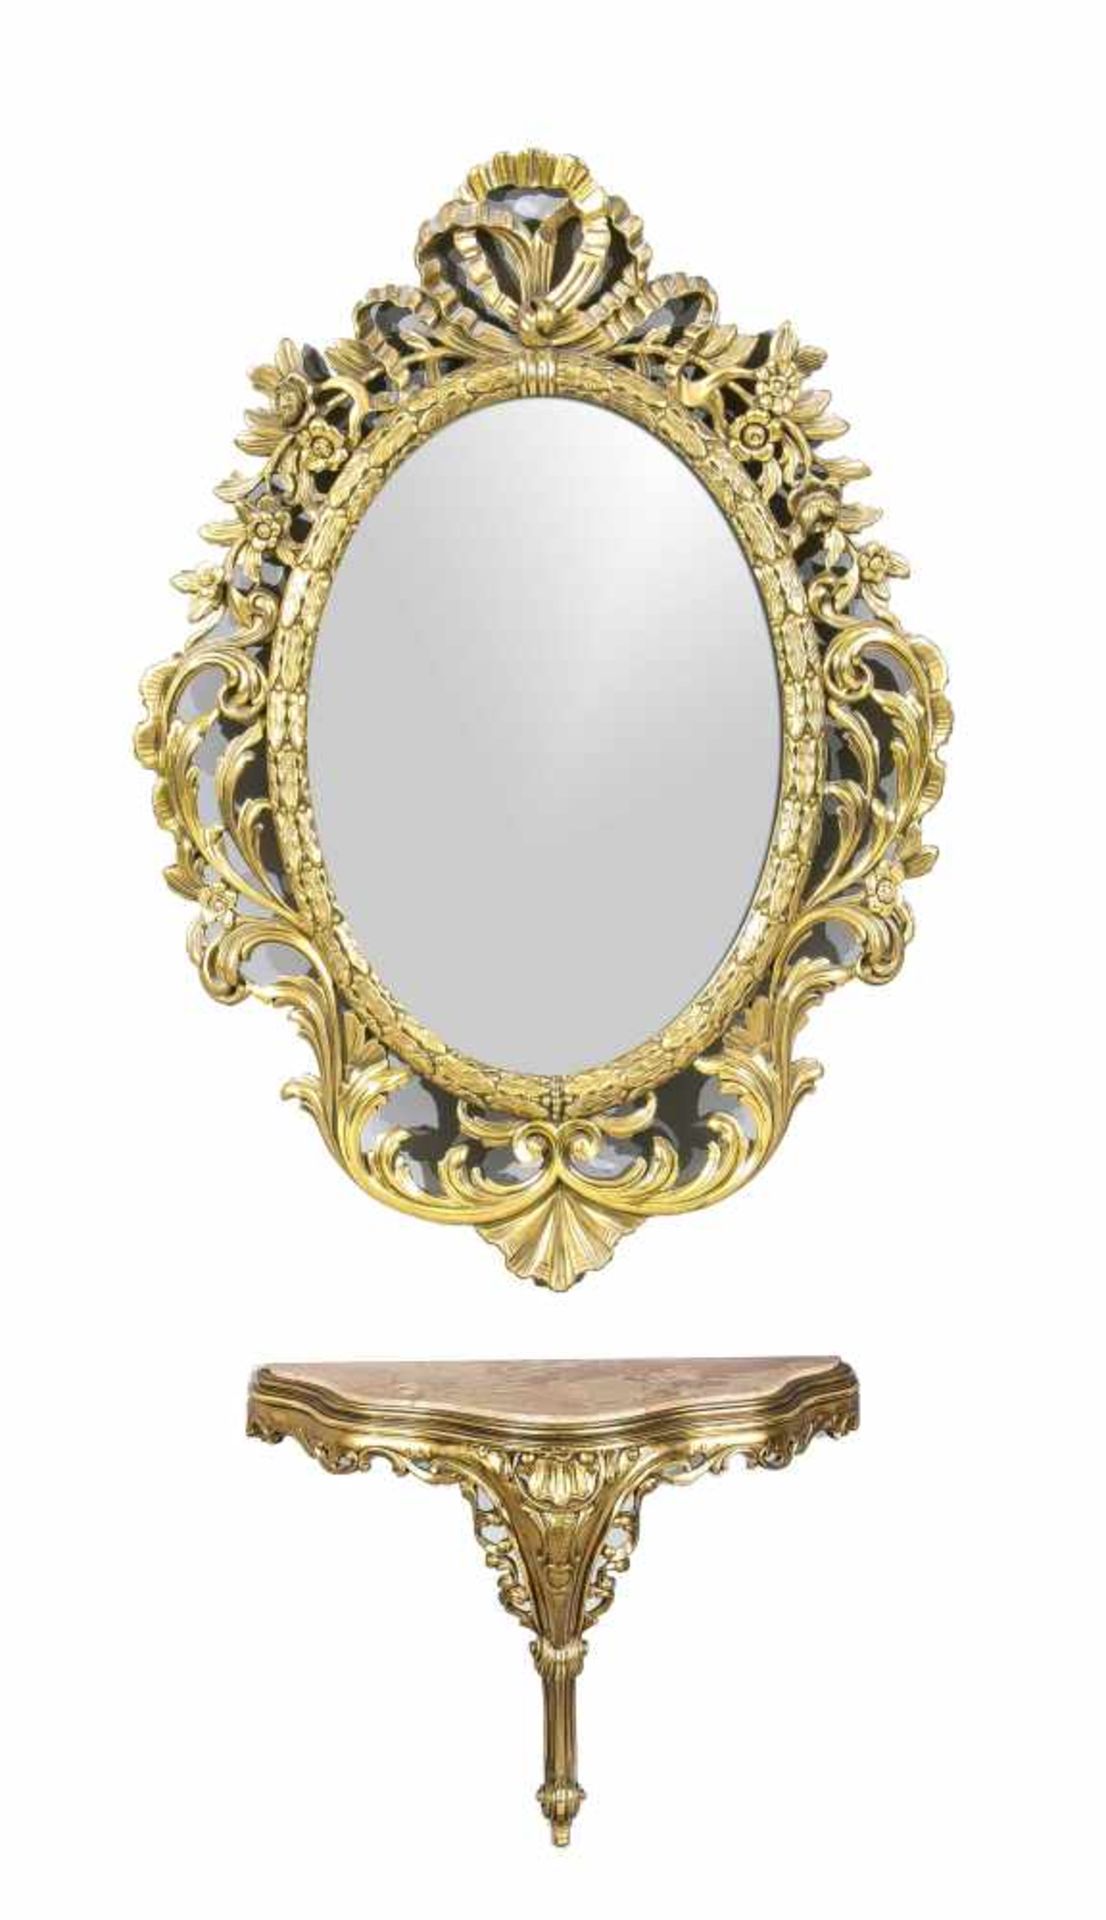 Spiegel mit Konsole, Ende 20. Jh., Holz durchbrochen geschnitzt und vergoldet, ovalerSpiegel mit